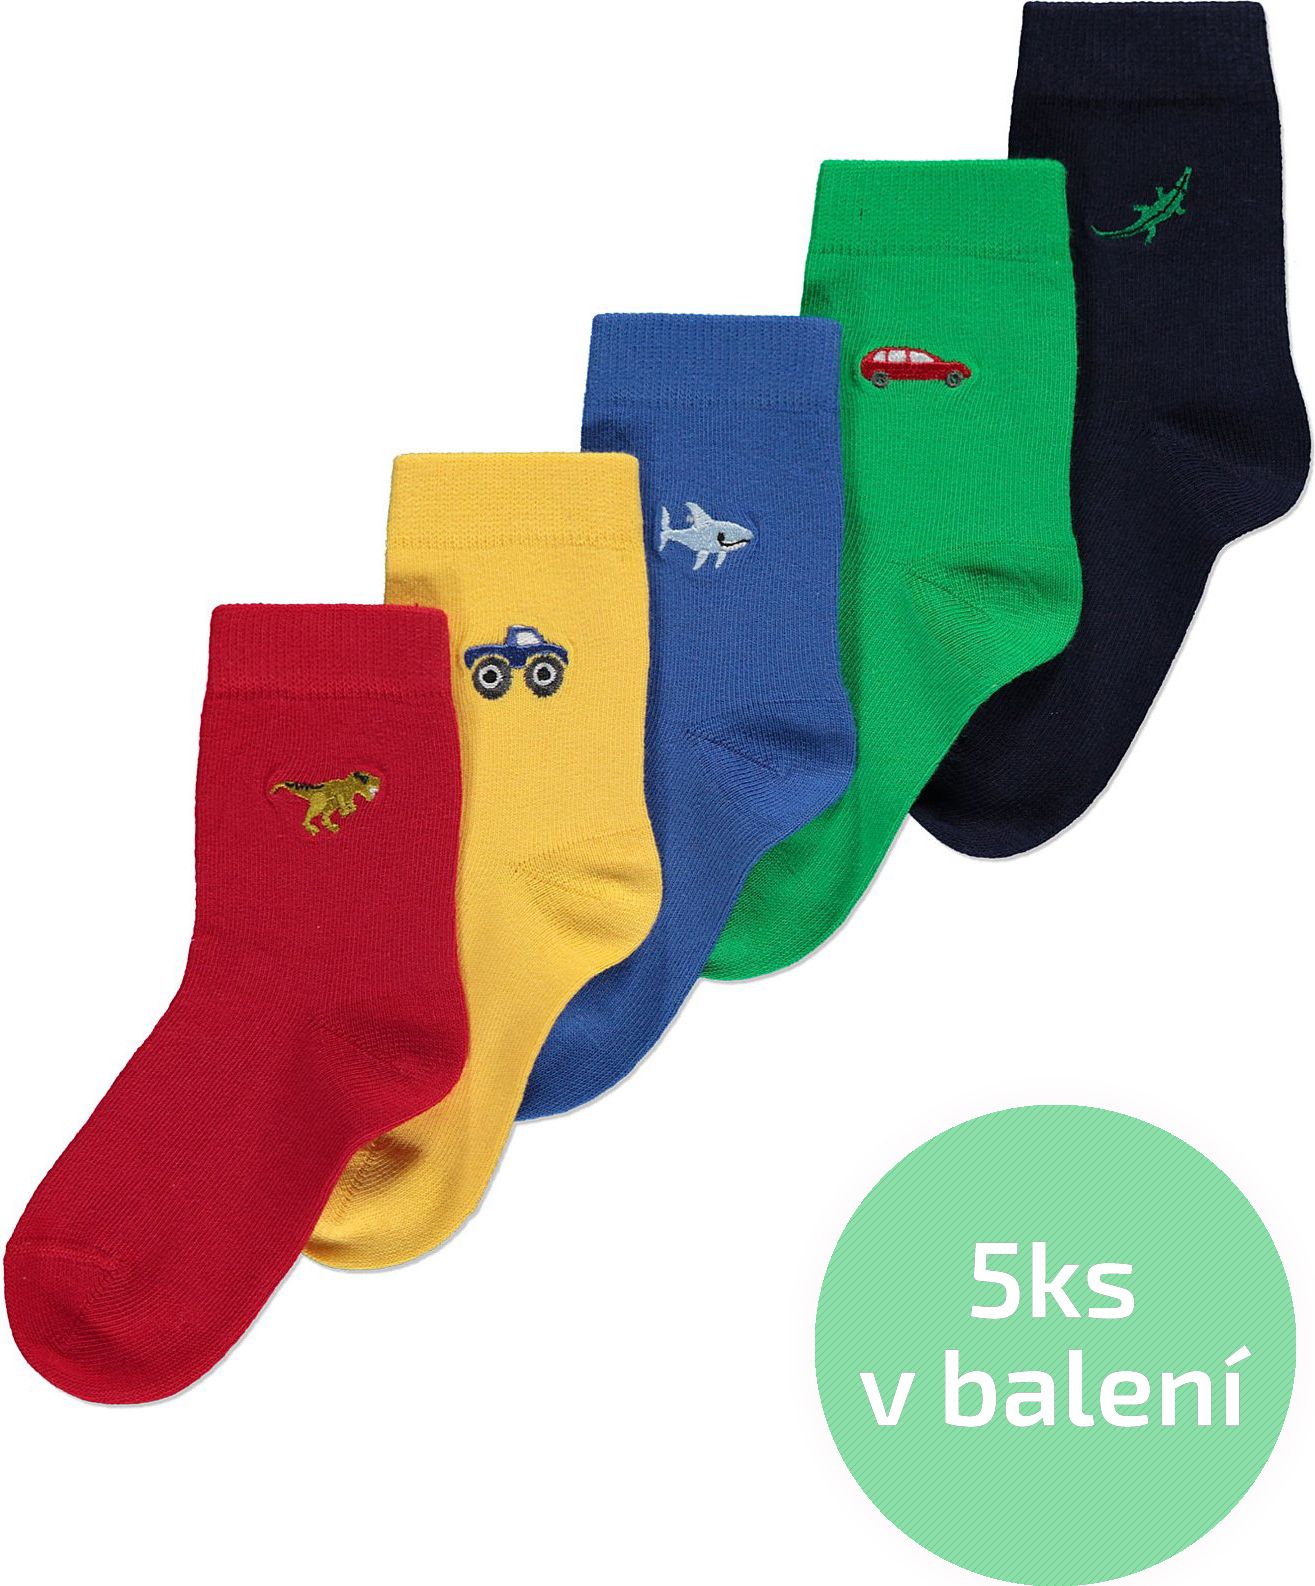 Chlapecké ponožky GEORGE, 5ks v balení, barevné s výšivkou Velikost: EU 19 - 22.5 (1.5 - 2 roky) - obrázek 1